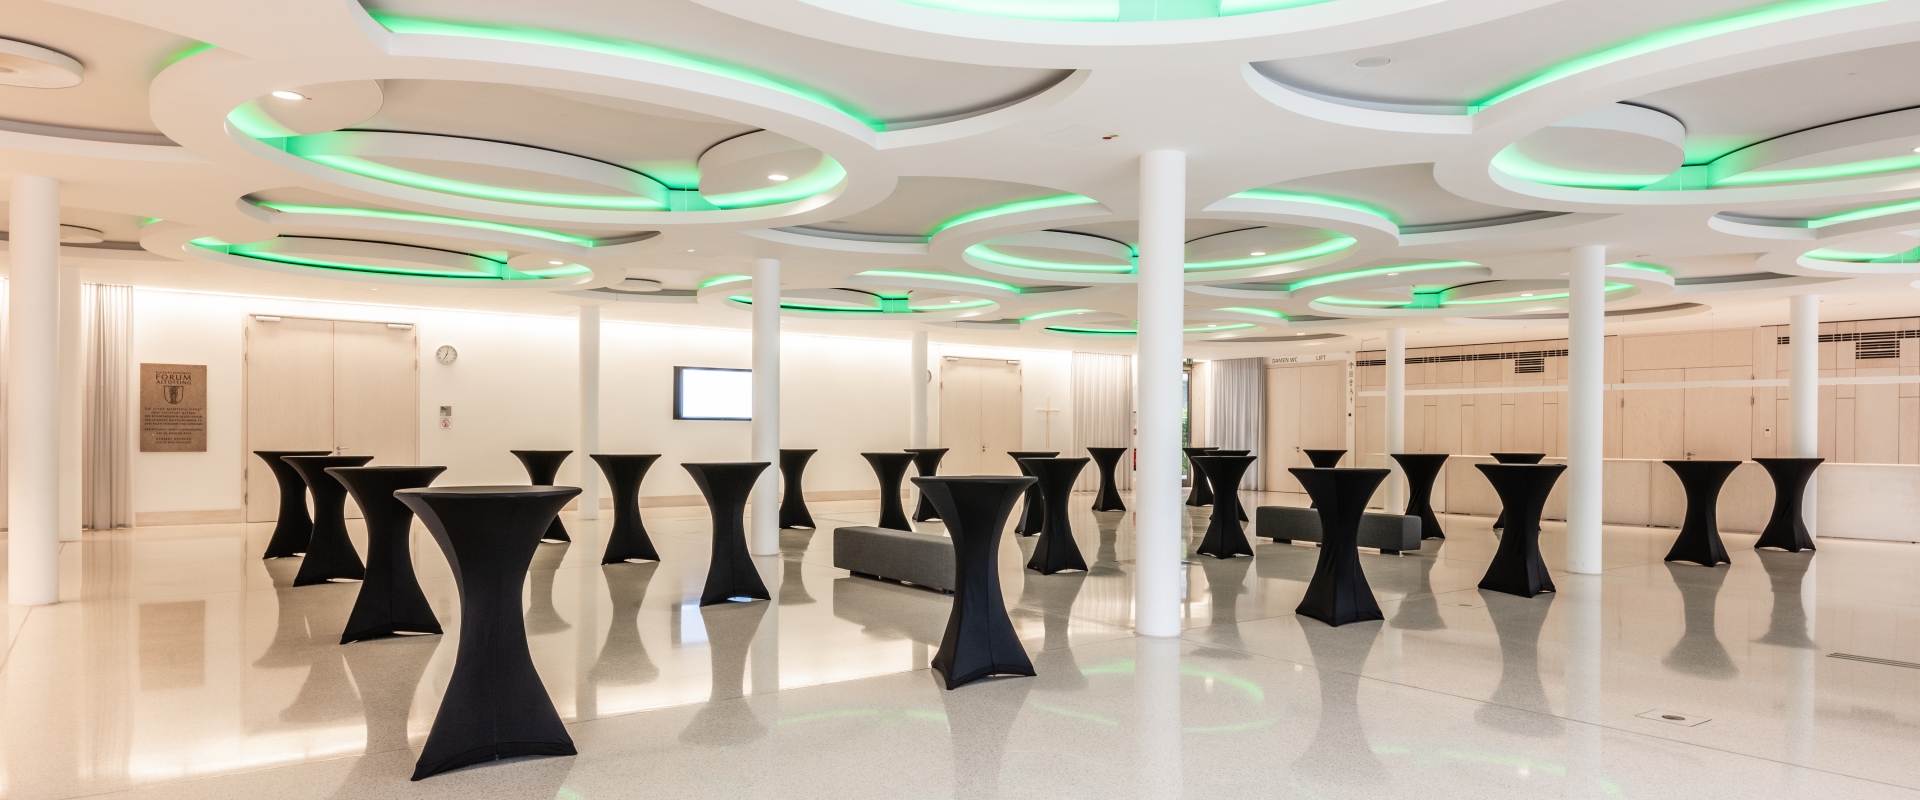 Das Foyer Abends im Forum Altötting, mit Stehtischen, die schwarze Hussen tragen und grüner Beleuchtung.